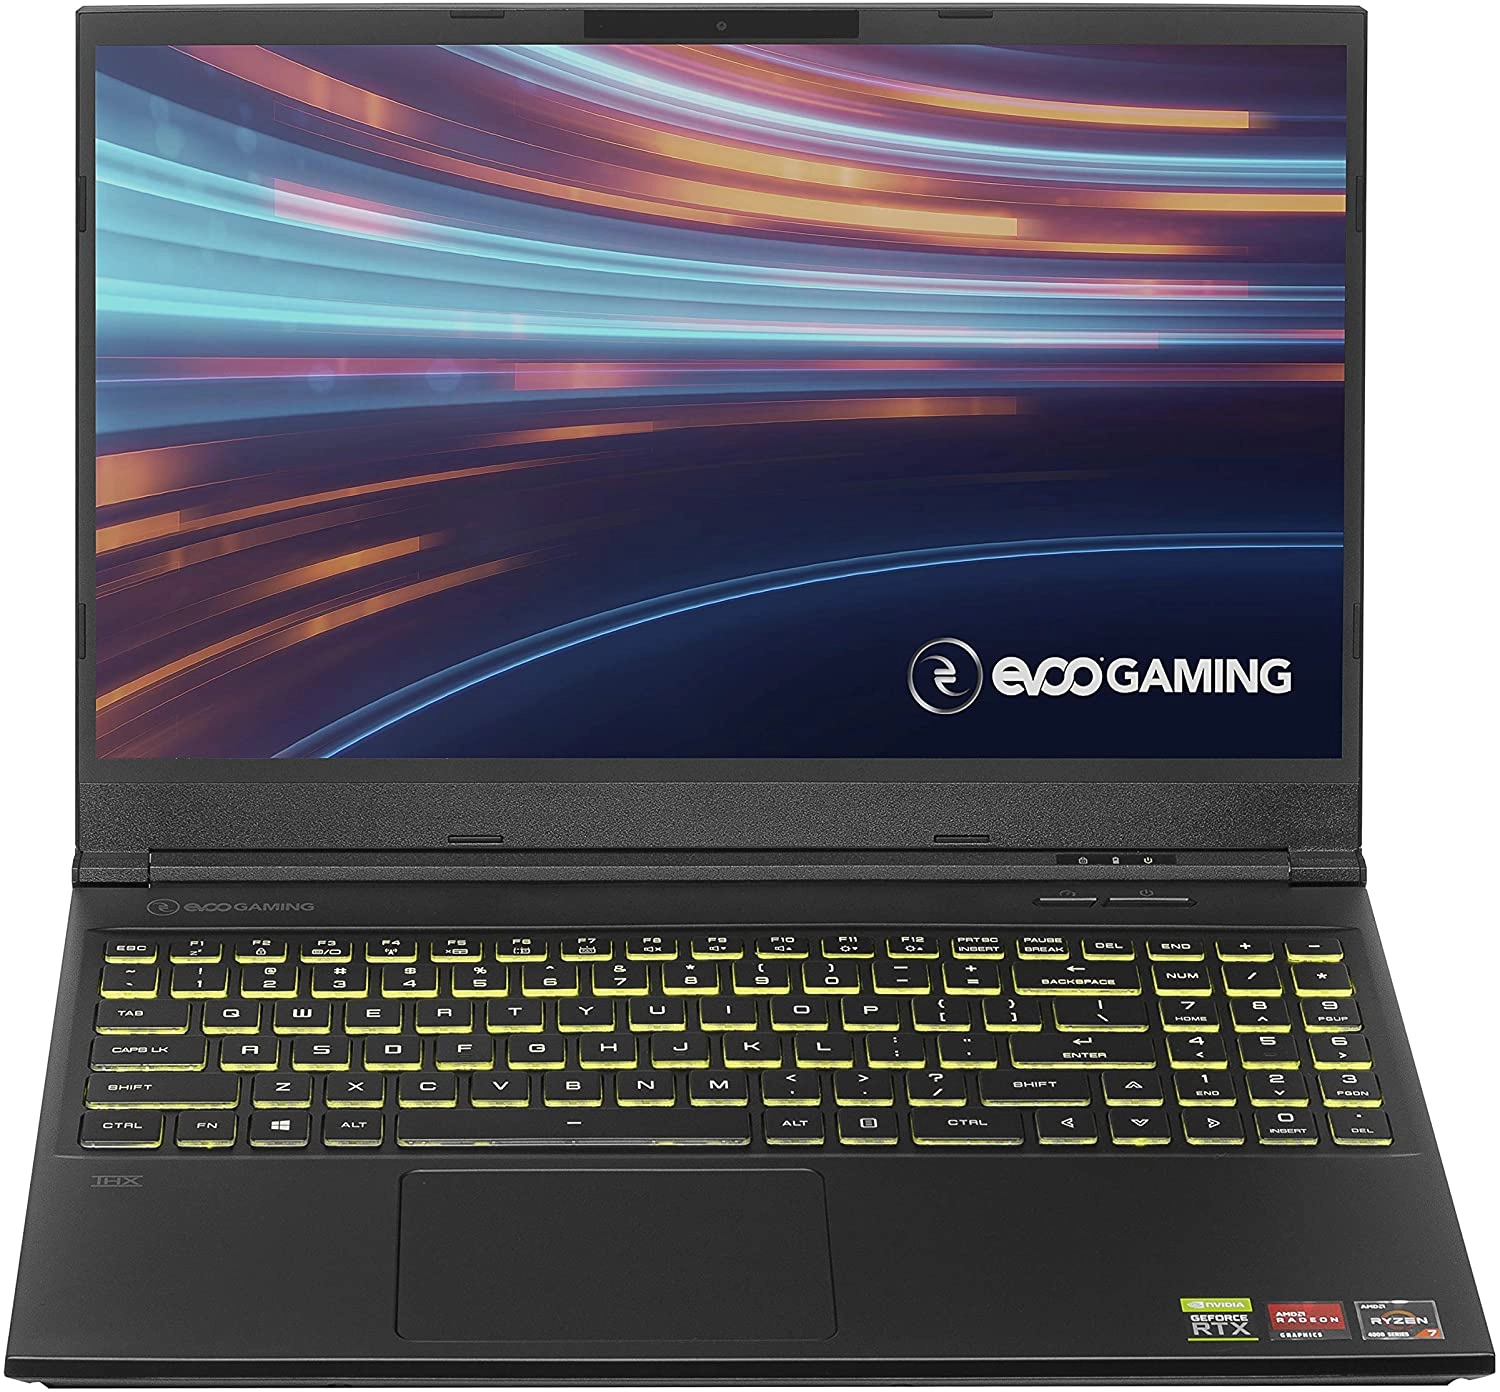 Evoo Gaming Laptop laptop image